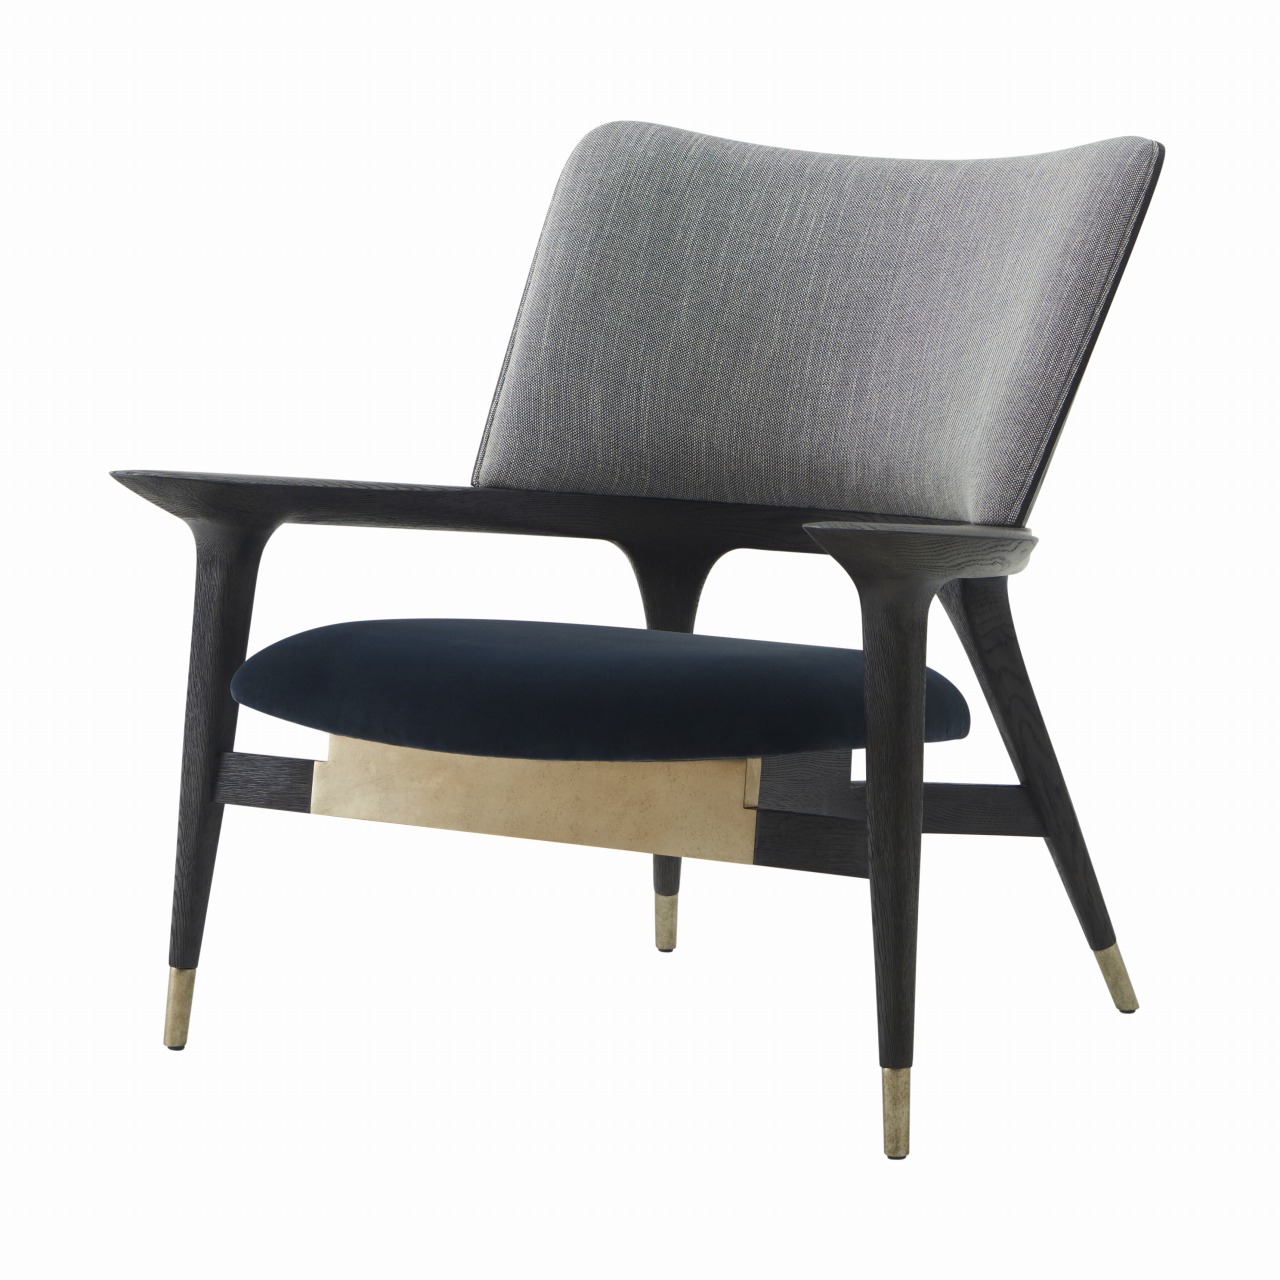 ラウンジチェア Lounge chair - 高級輸入家具・クラシック家具専門の 